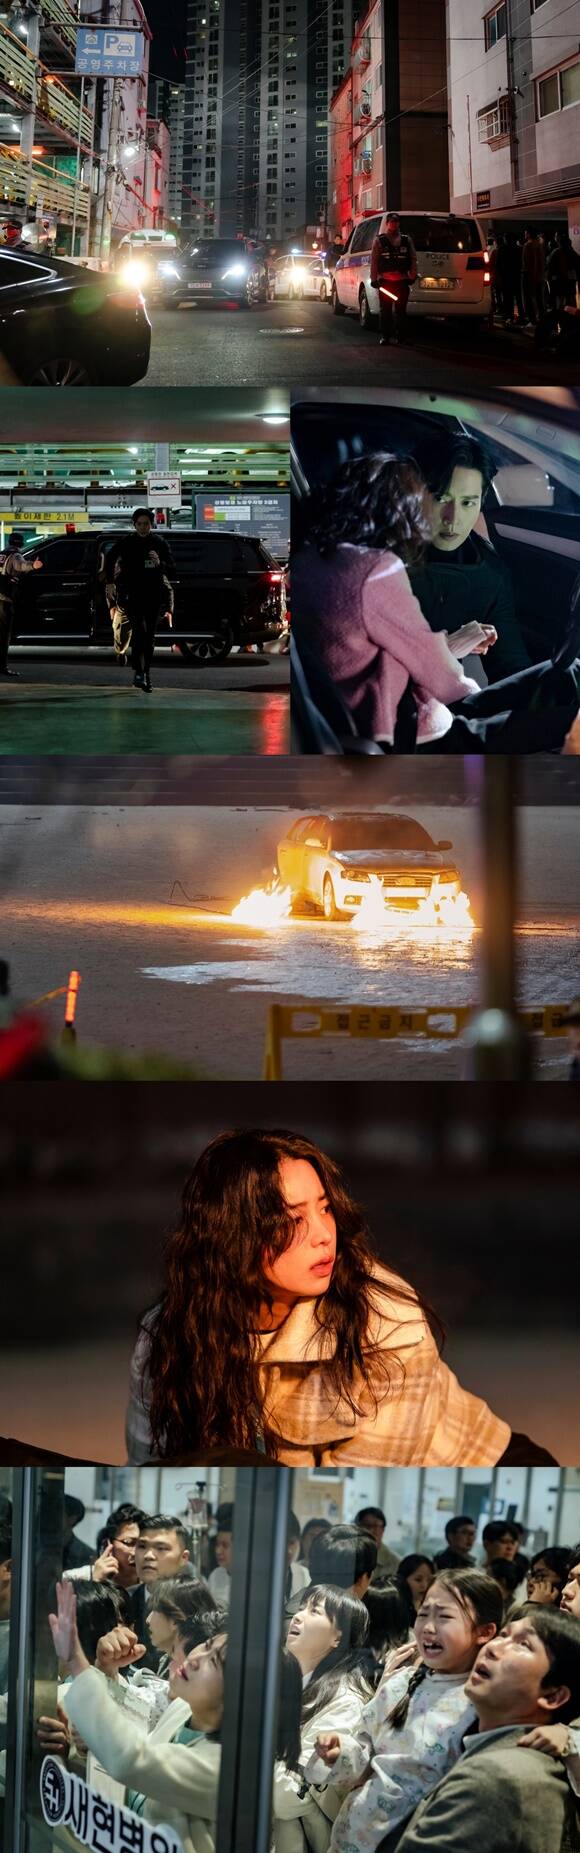 SBS 새 목요드라마 국민사형투표 제작진은 도시의 어둠을 밝히는 자동차들의 플래시, 무리를 이룬 채 곳곳에 배치된 경찰의 모습 등 촬영 현장 스틸을 공개했다. /SBS